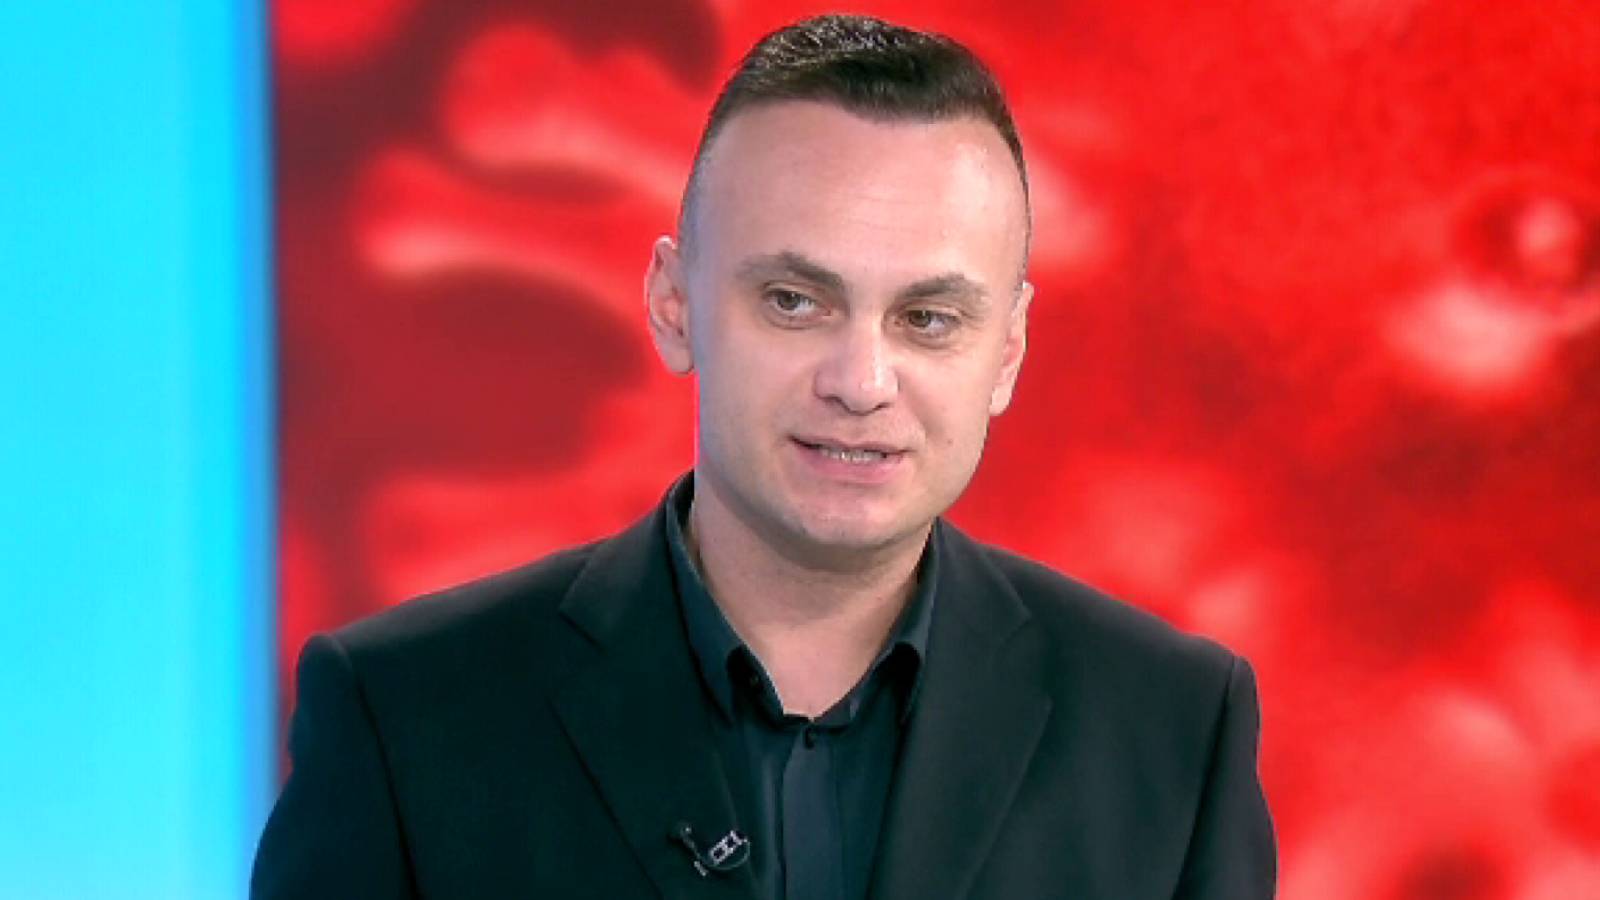 Adrian Marinescu Buone notizie dai romeni Quando finirà la sesta ondata di coronavirus